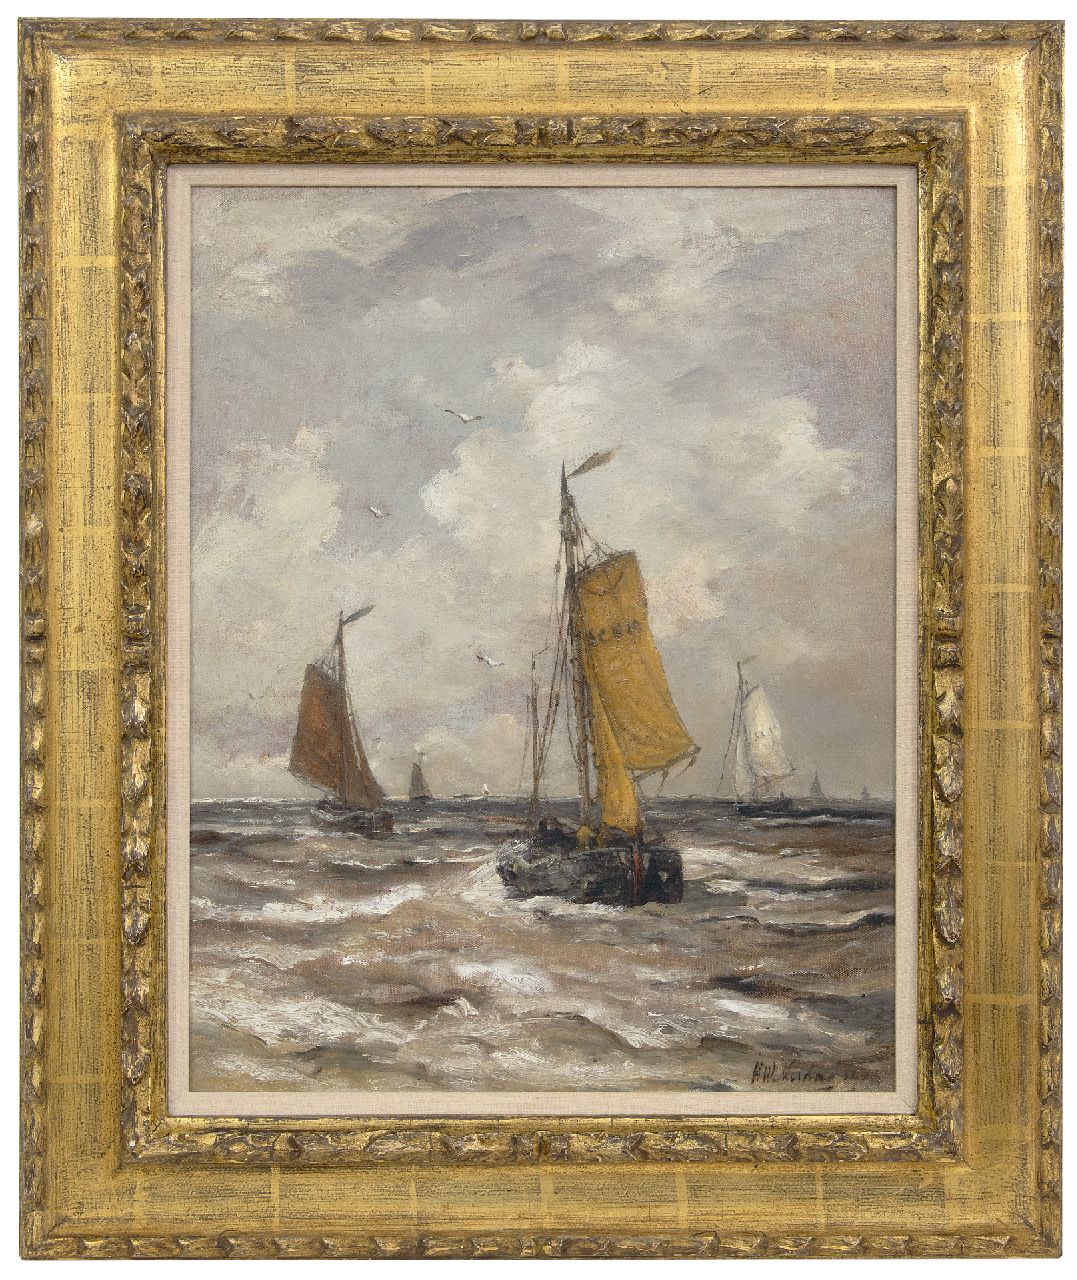 Mesdag H.W.  | Hendrik Willem Mesdag | Schilderijen te koop aangeboden | Terugkerende bomschuiten, olieverf op doek 50,7 x 40,0 cm, gesigneerd rechtsonder en gedateerd 190(..)